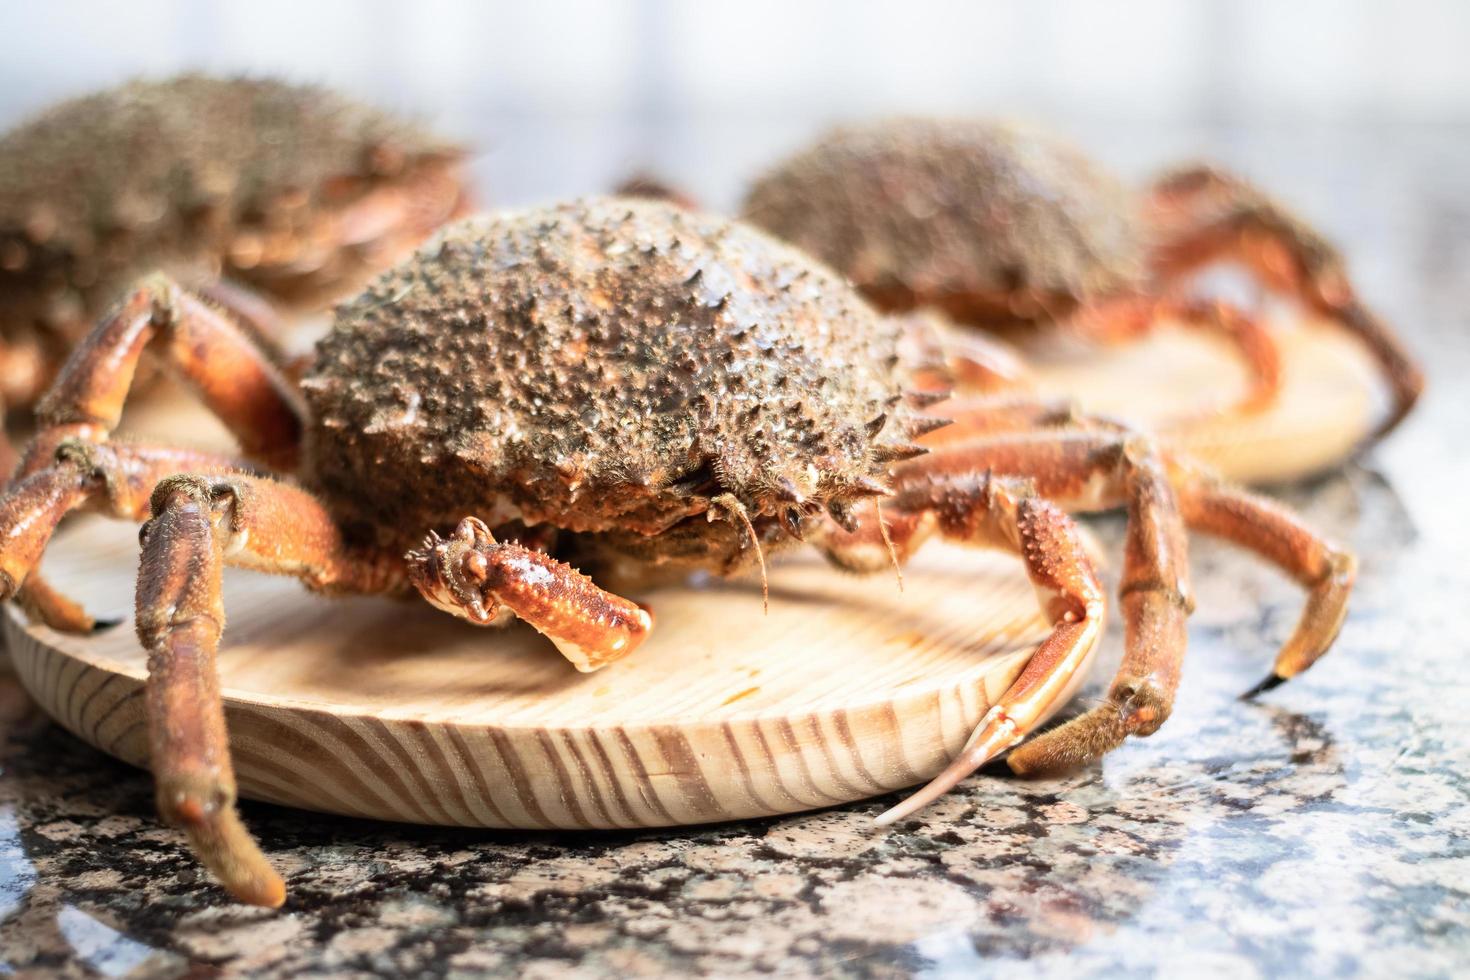 Crabs wooden slabs photo